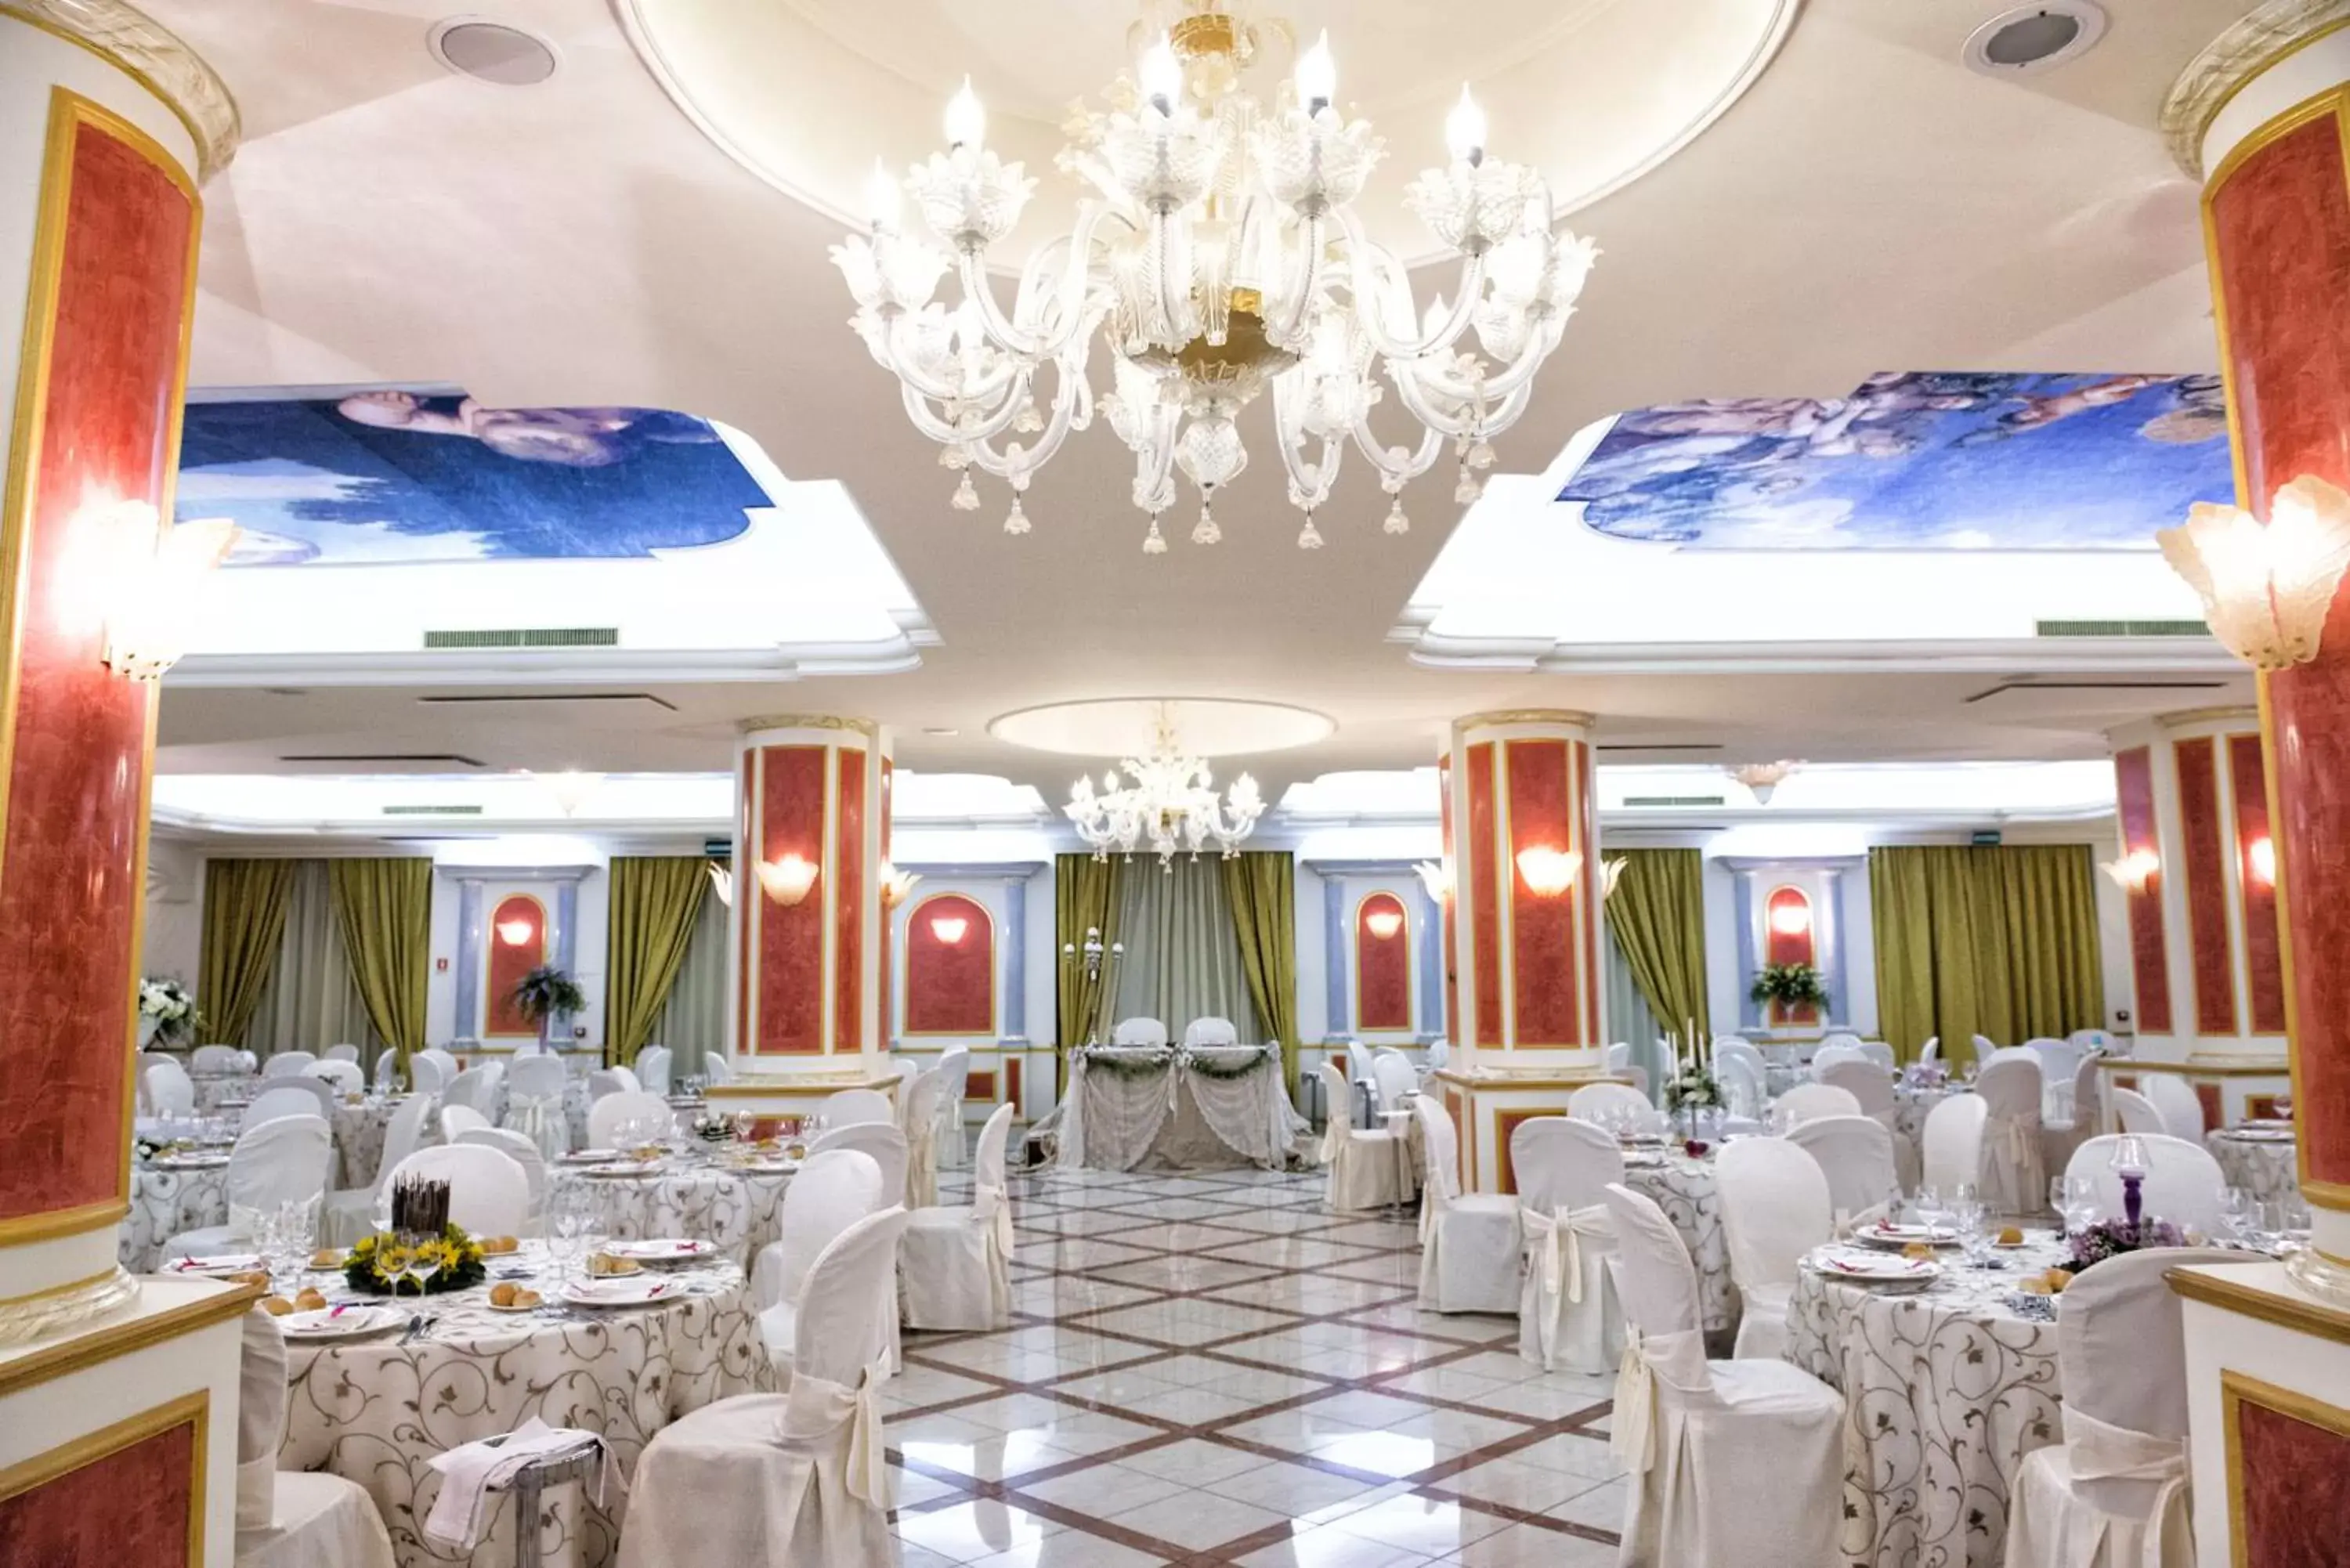 Banquet/Function facilities, Banquet Facilities in Parco dei Principi Hotel